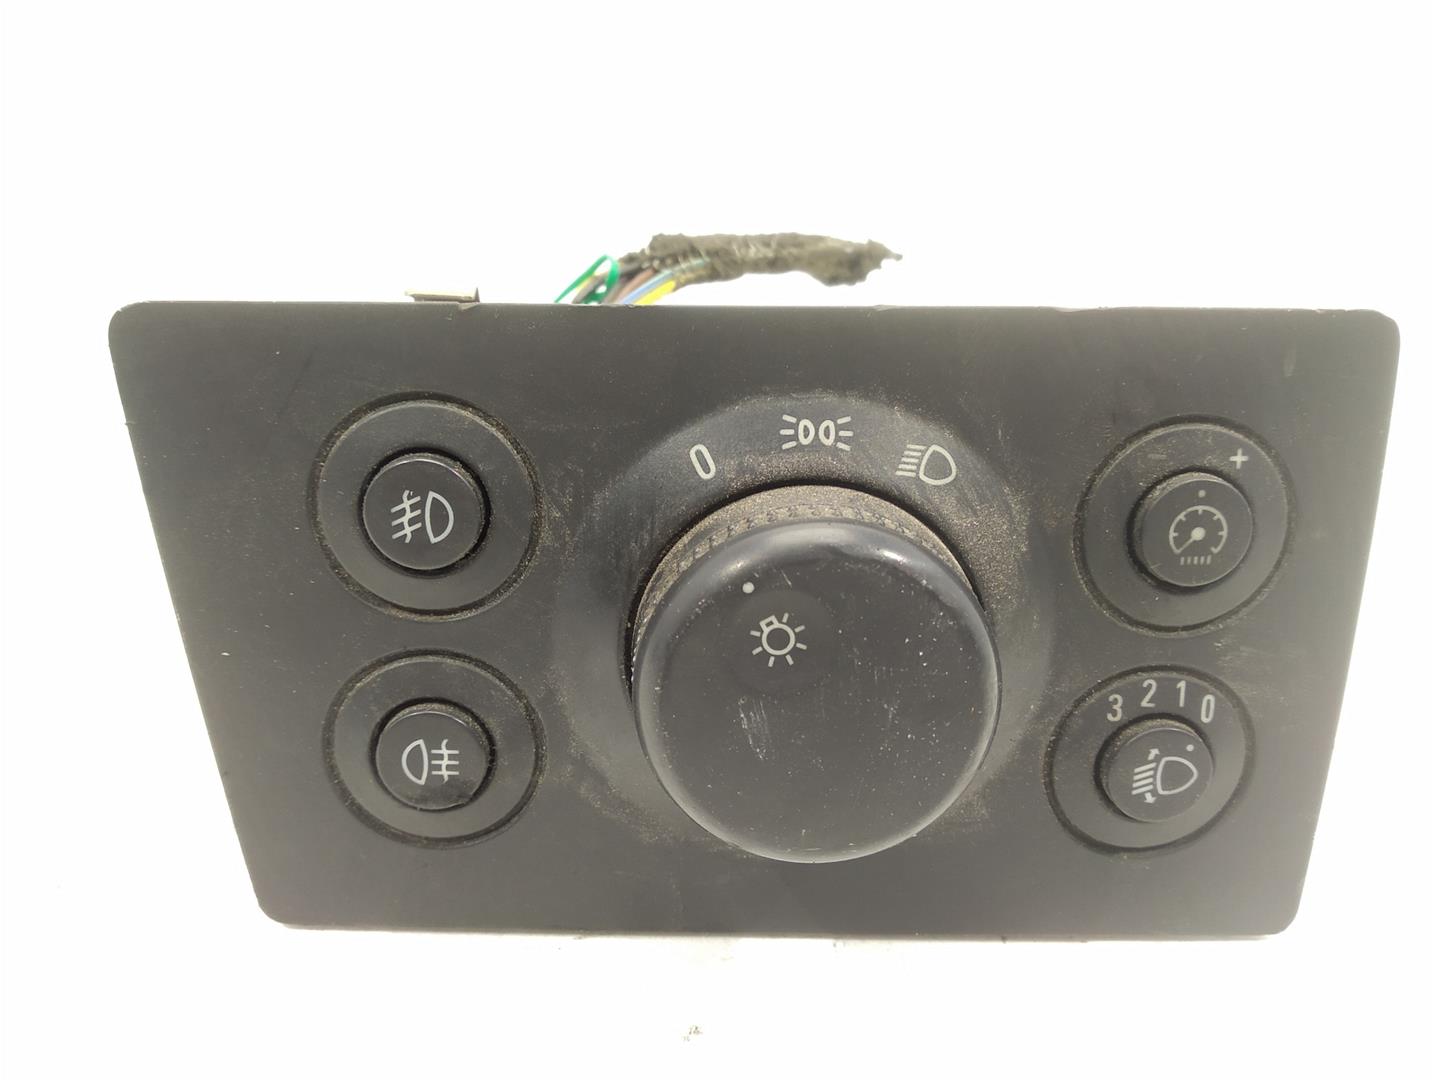 OPEL Zafira B (2005-2010) Headlight Switch Control Unit 13205865, 13205865, 13205865 24512705